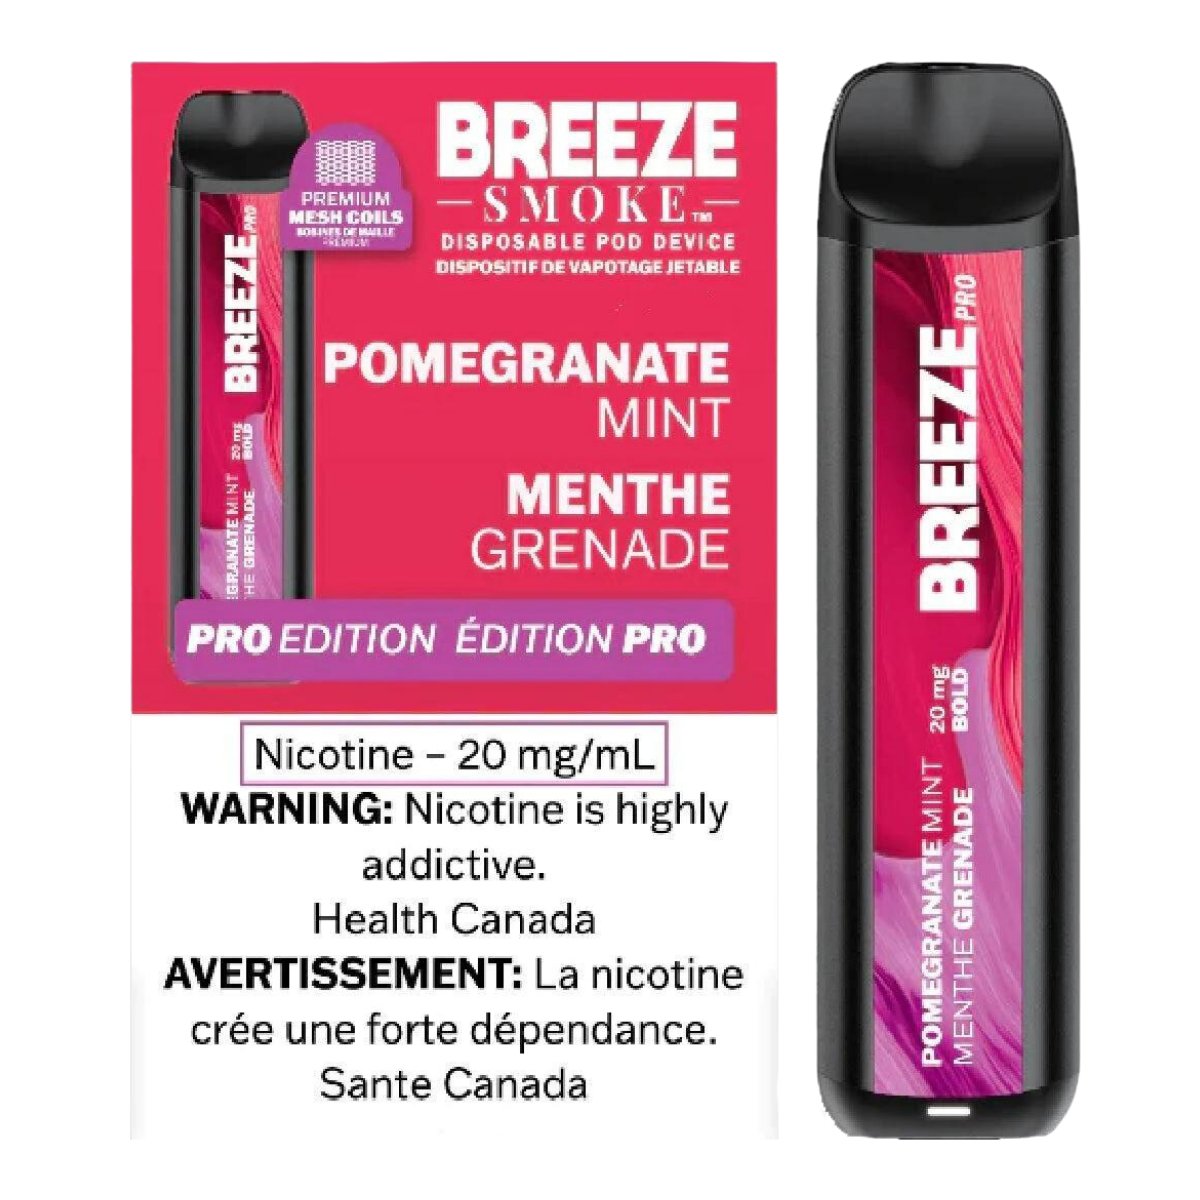 Breeze Pro - Pomegranate - Vape Crush